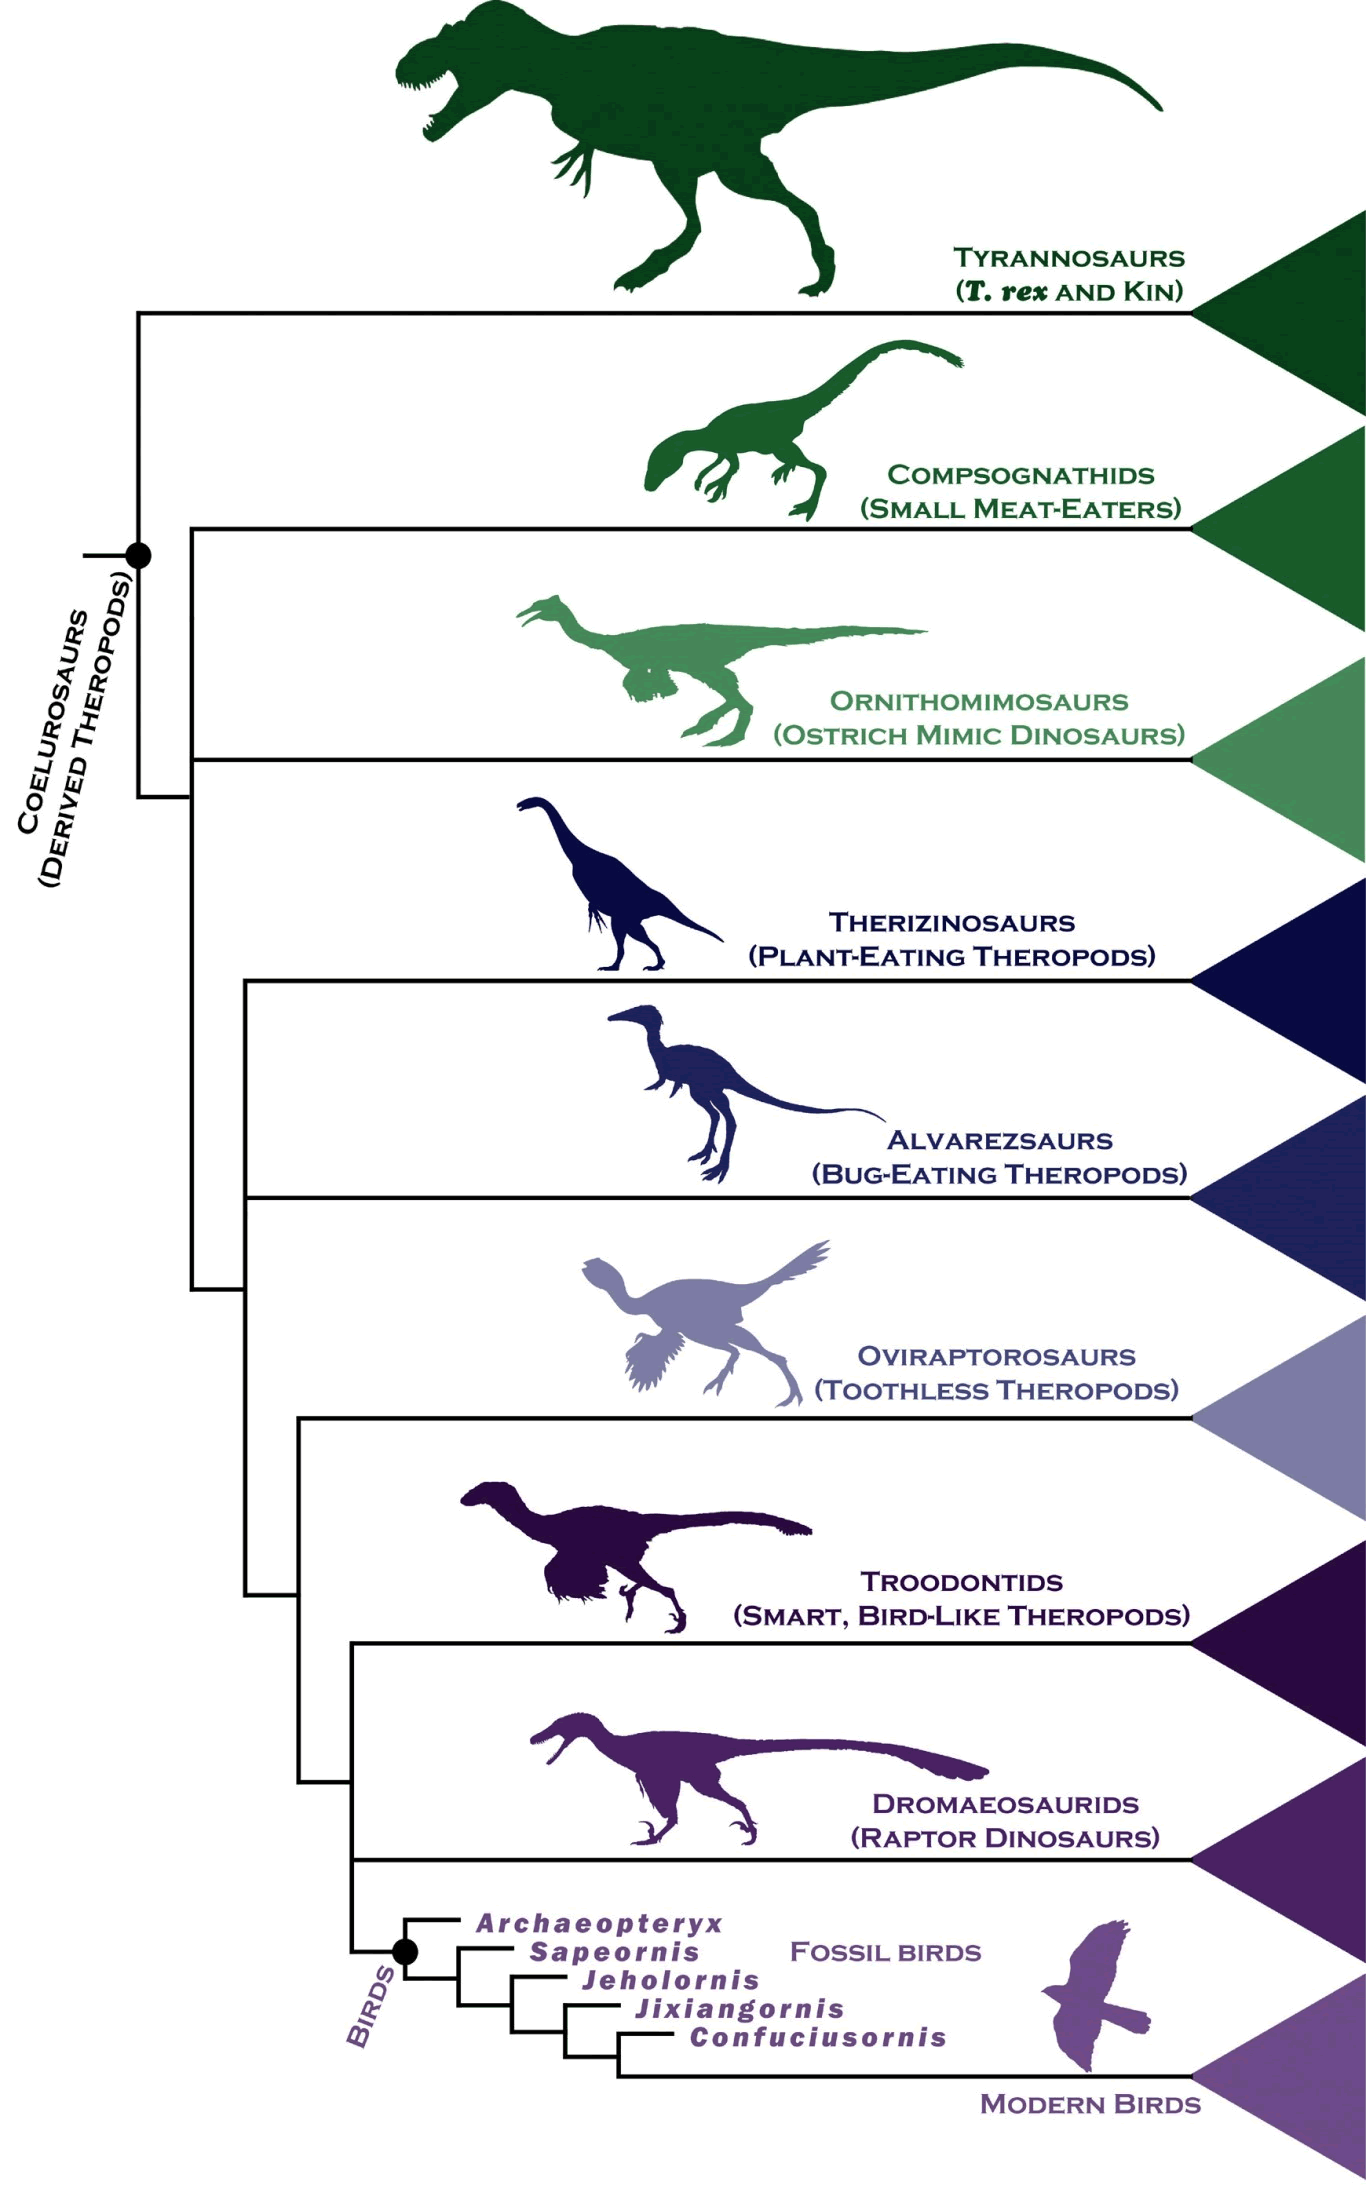 新的恐龙谱系图表明双腿站立的食肉恐龙在数千万年间逐渐拥有鸟类的